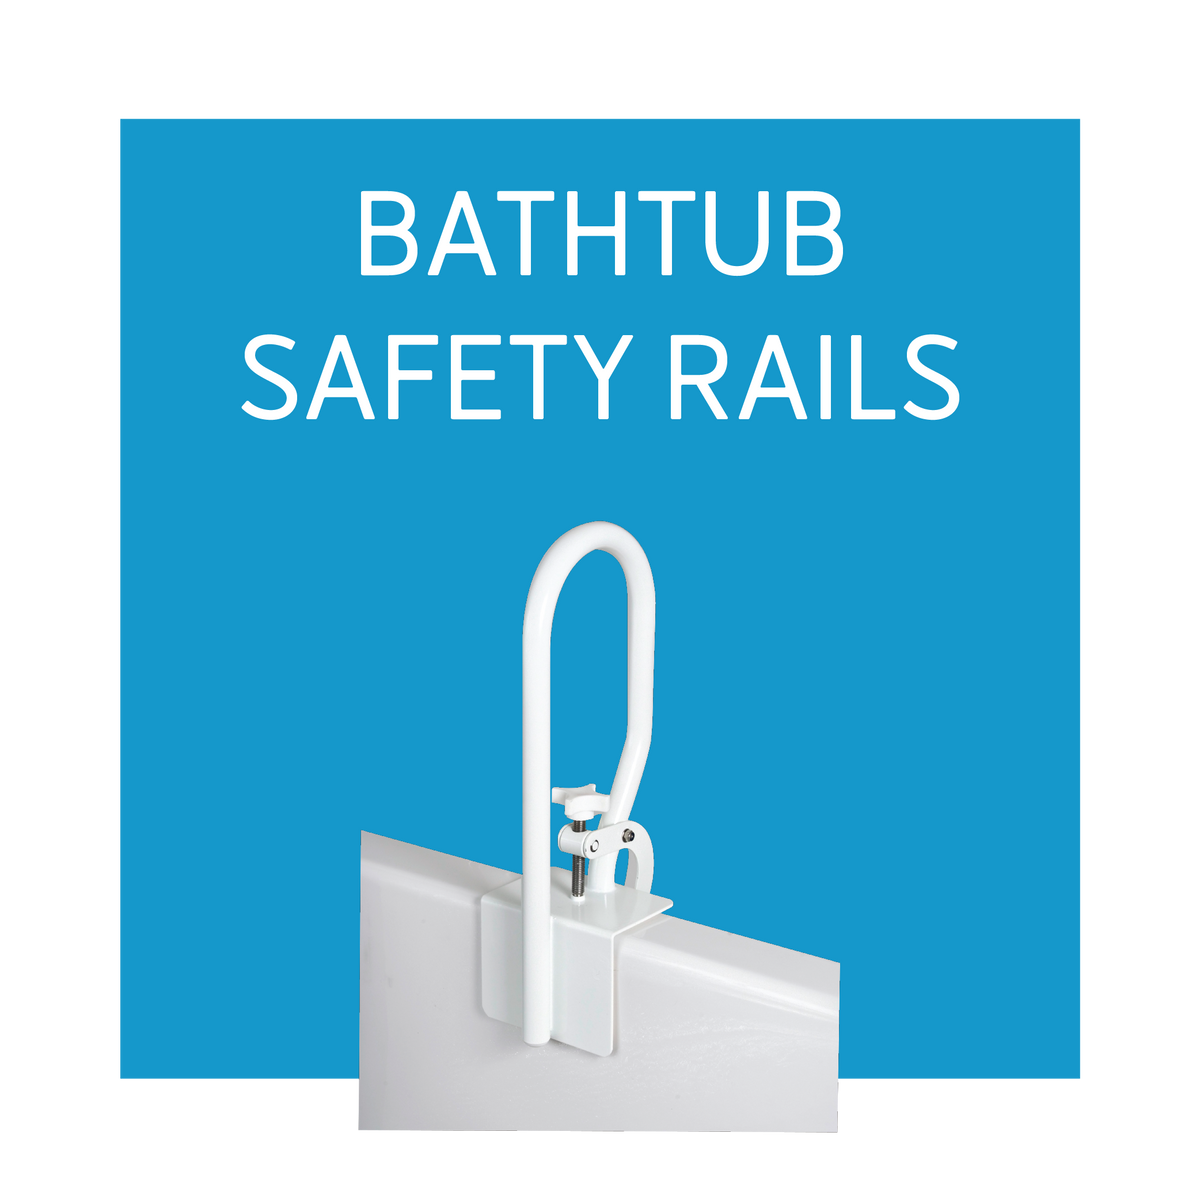 A bathtub safety rail on a blue background